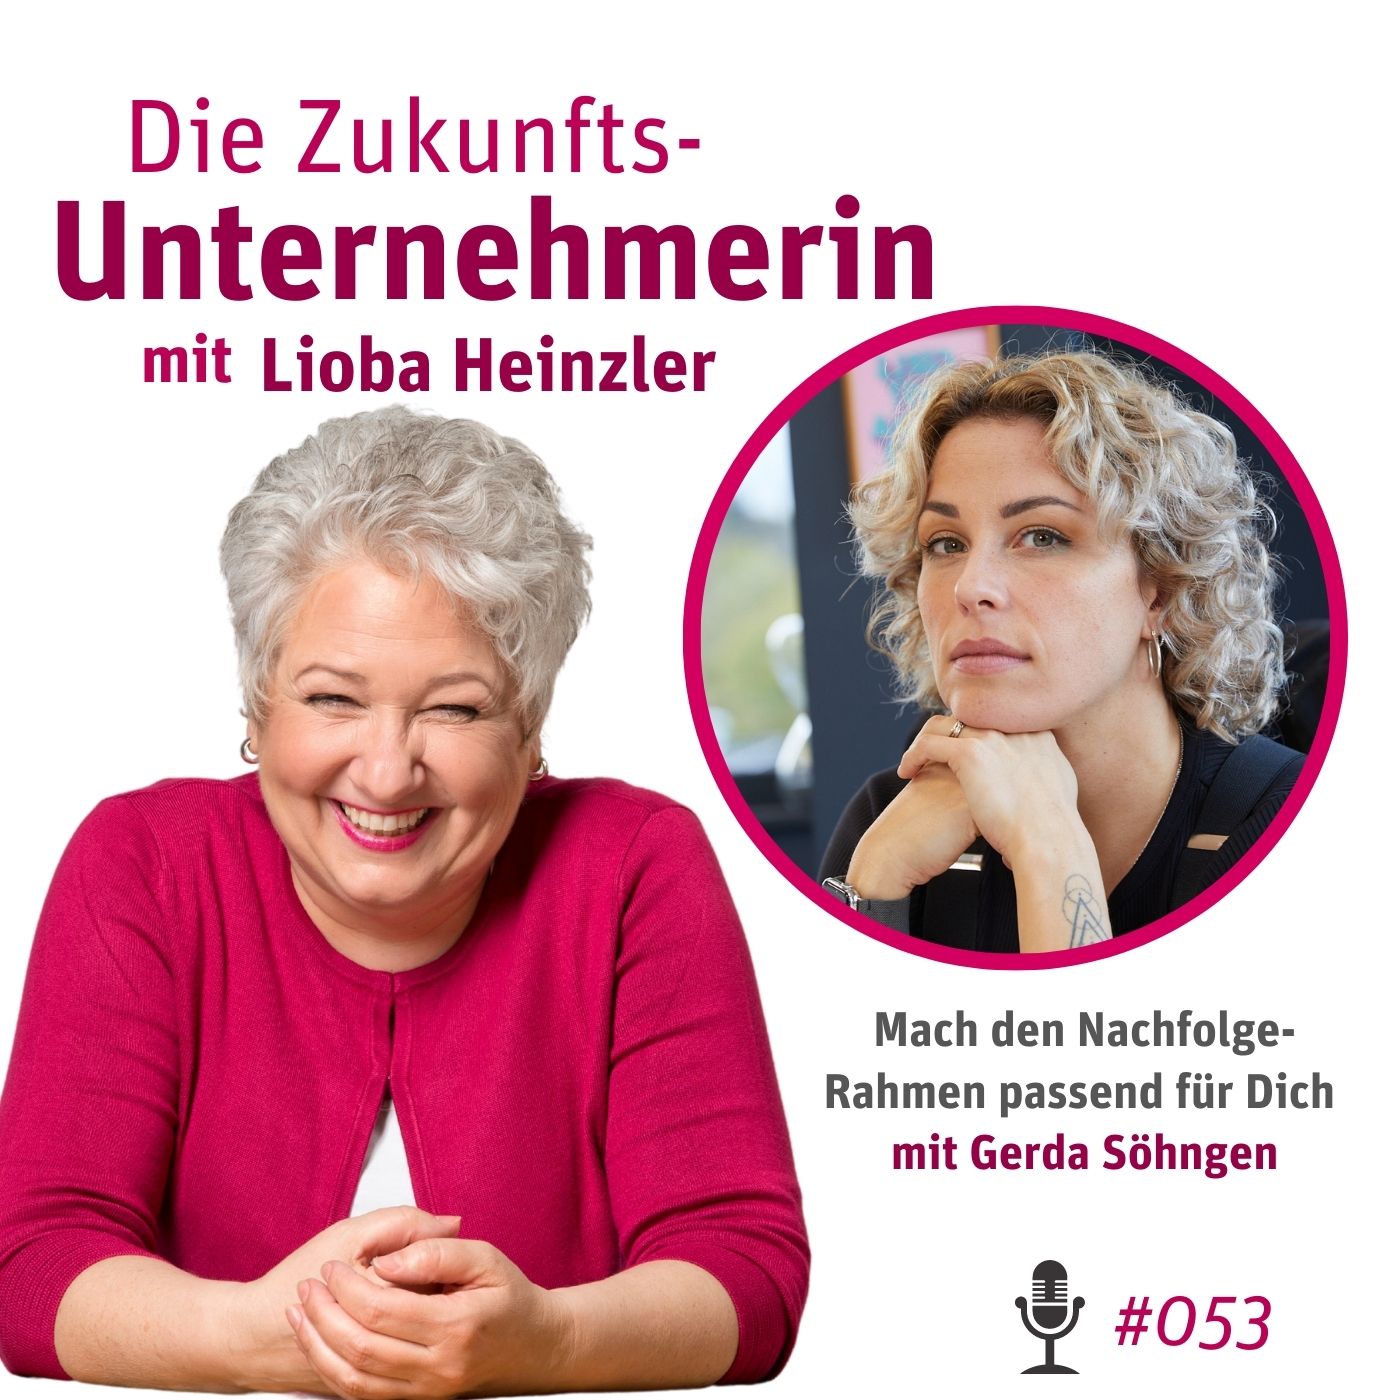 Mach den Nachfolge-Rahmen passend für Dich - mit Gerda Söhngen